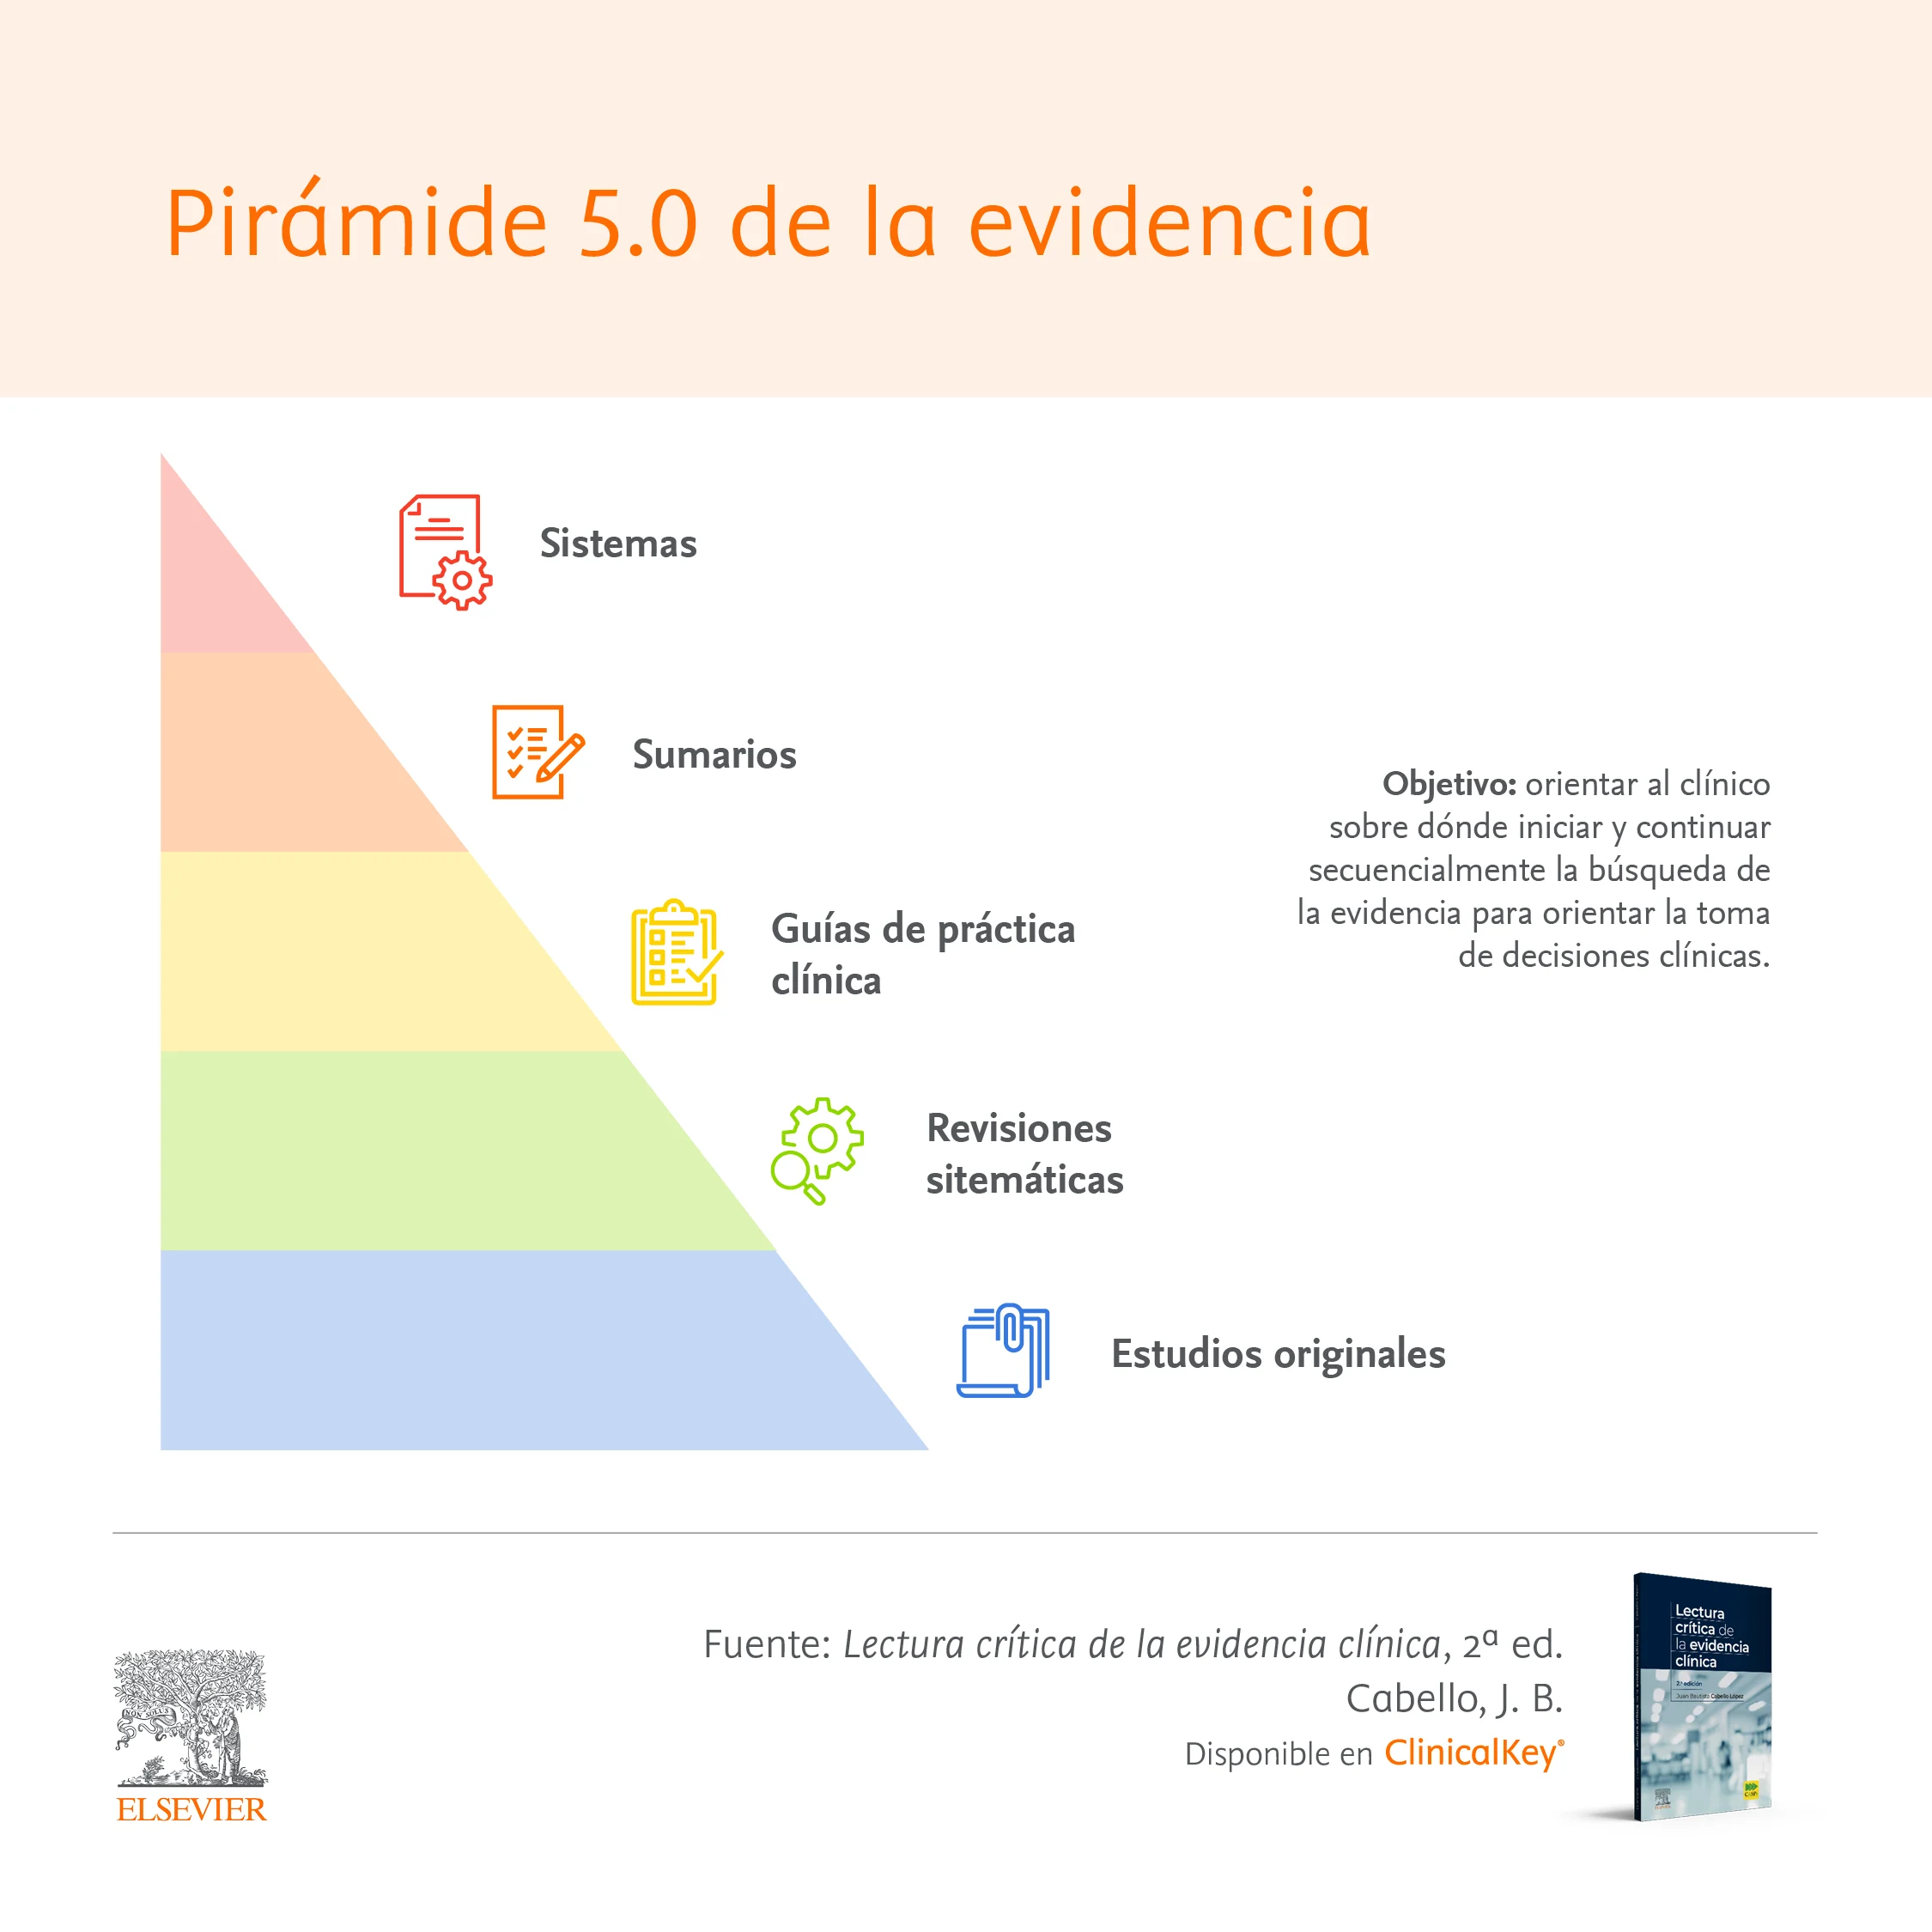 Pirámide 5.0 de la evidencia